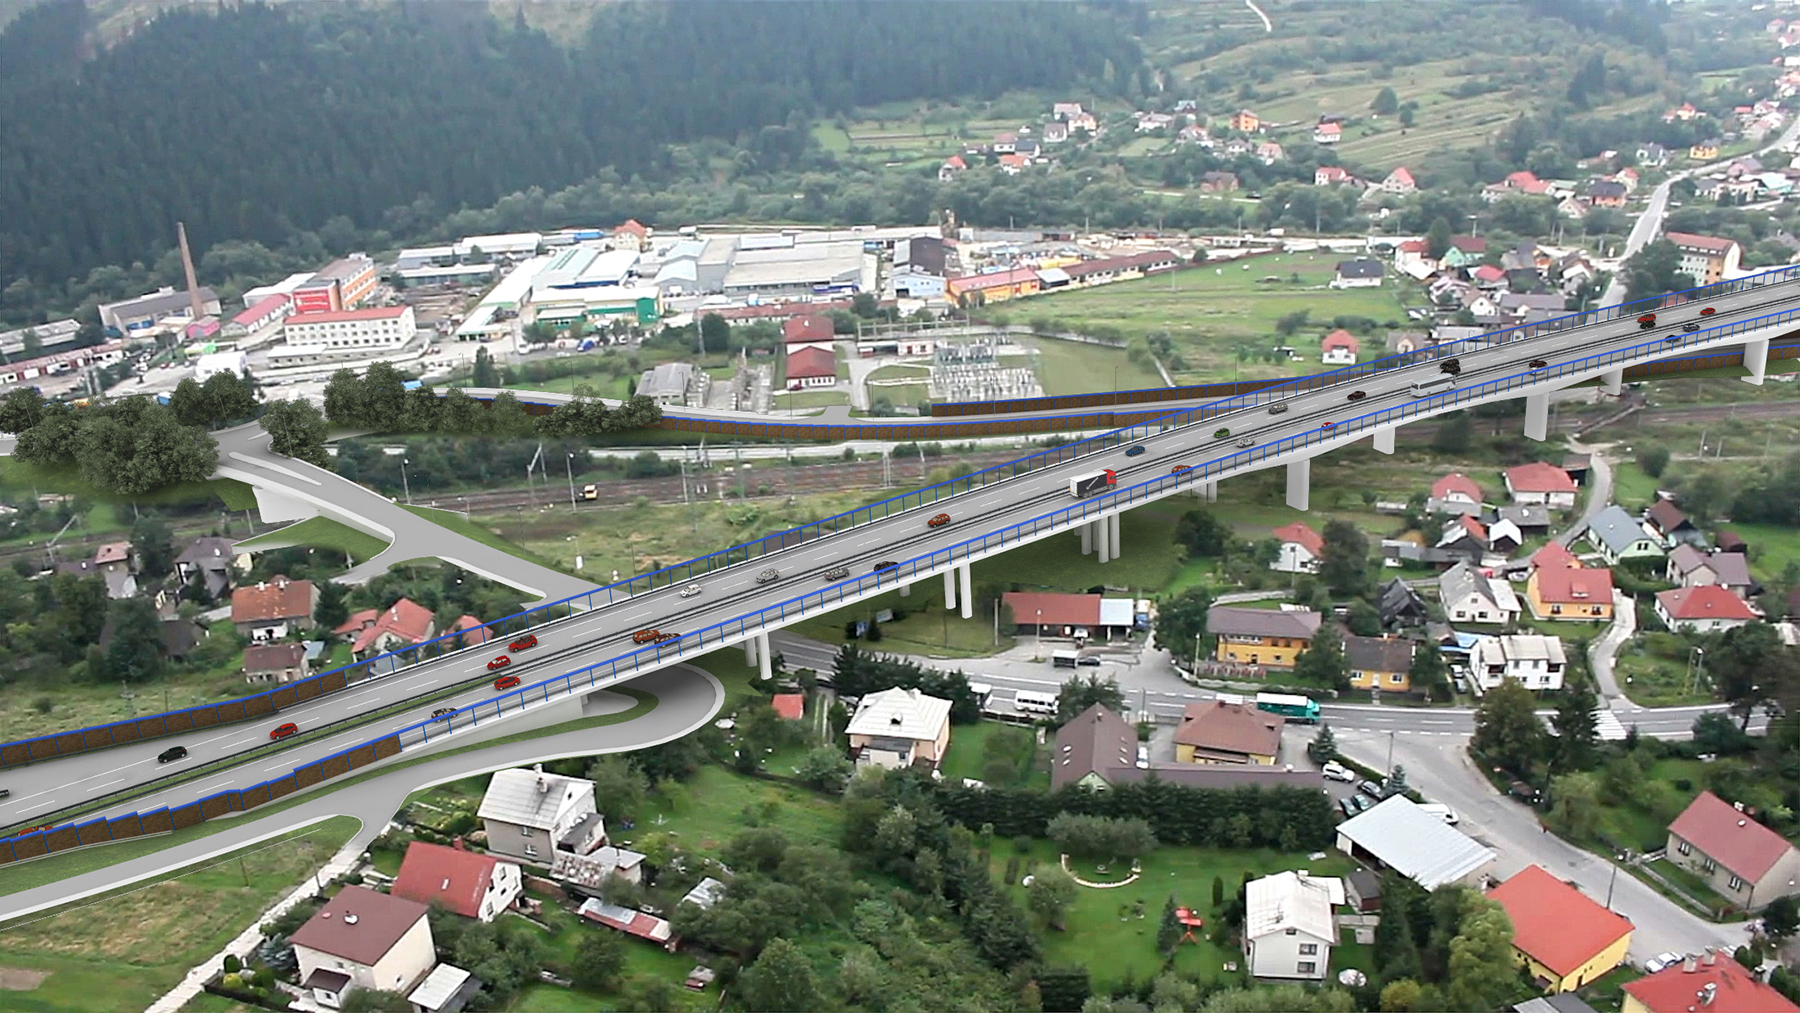 Medzi najvýznamnejšie mosty na trase diaľnice patrí estakáda Podzávoz s dĺžkou 832 m.